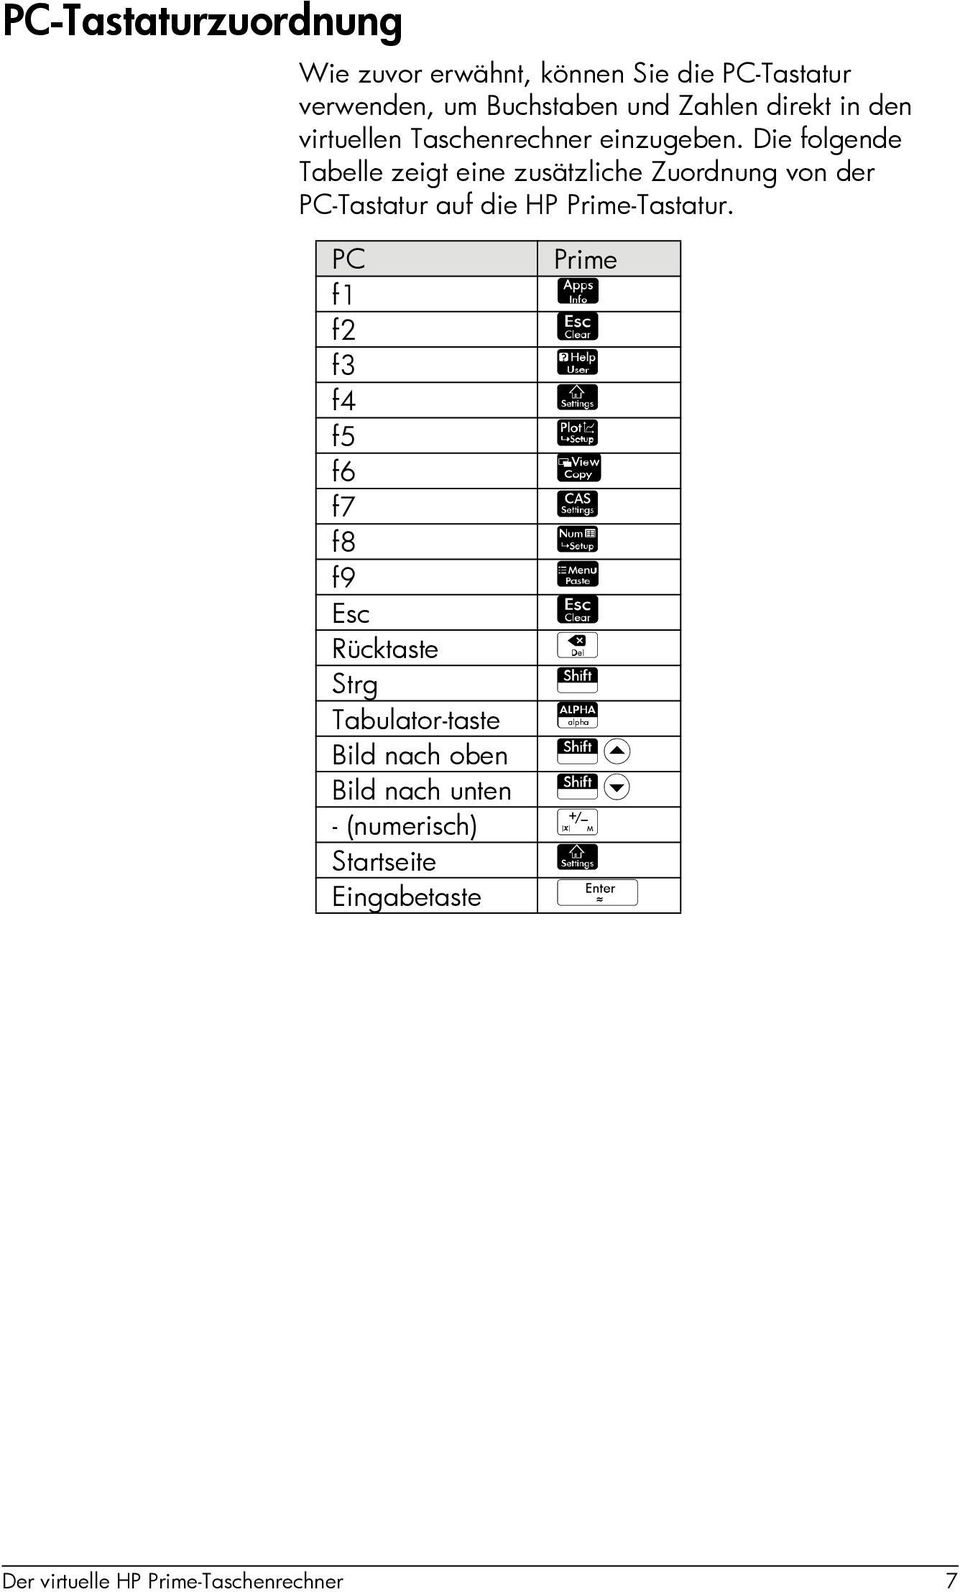 Die folgende Tabelle zeigt eine zusätzliche Zuordnung von der PC-Tastatur auf die HP Prime-Tastatur.